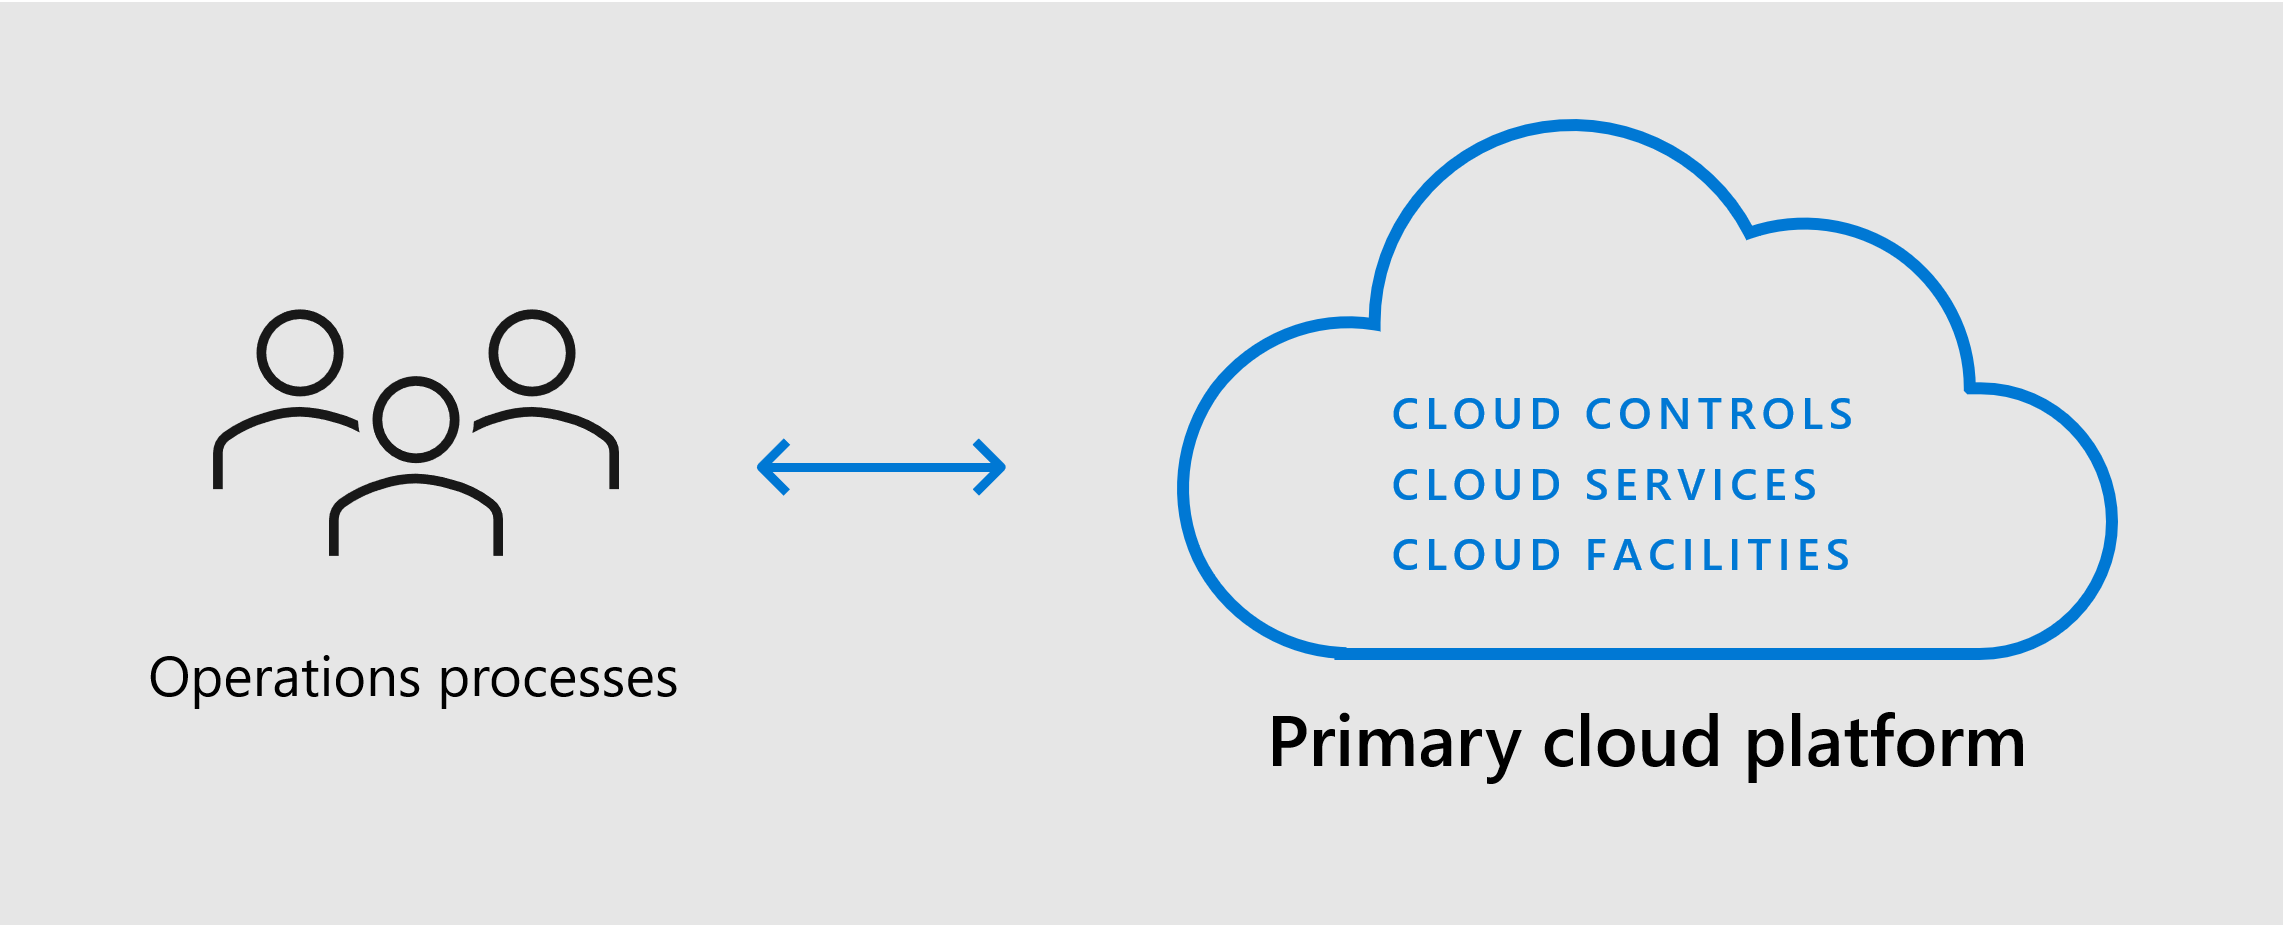 Diagrama que mostra a plataforma de cloud principal com instalações, serviços e controlos para suportar os seus processos.